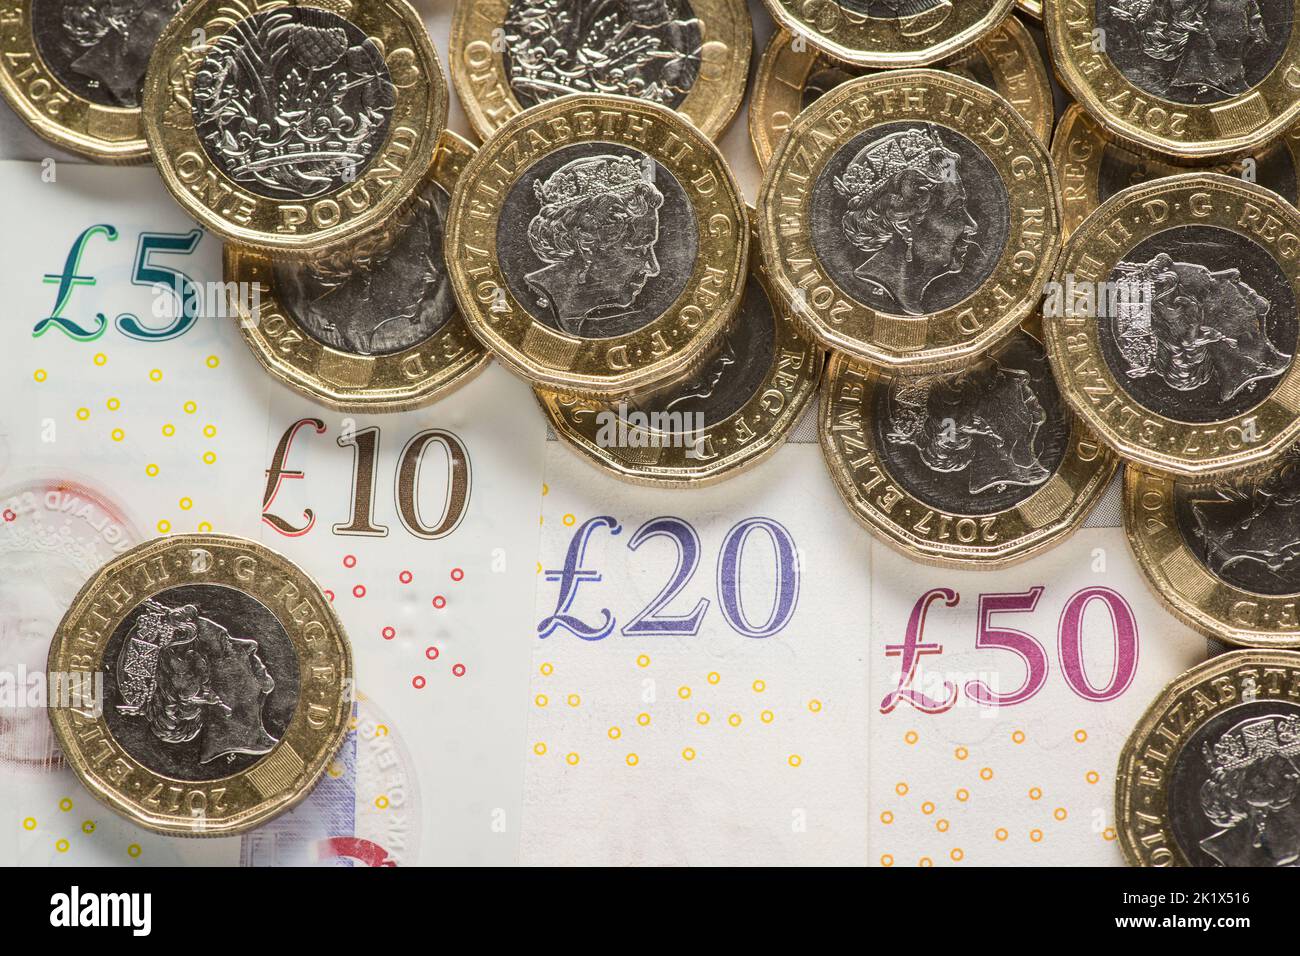 Aktenfoto vom 26/01/18 eines britischen 5-Pfund-, 10-Pfund-, 20-Pfund- und 50-Pfund-Scheins mit 1-Pfund-Münzen. Die Kreditaufnahme der Regierung erreichte im August £11,8 Milliarden, da die Zinszahlungen aufgrund der steigenden Inflation höher stiegen. Das Office for National Statistics (ONS) sagte, dass die Kreditaufnahme im August £2,6 Milliarden unter dem Niveau des gleichen Monats des vergangenen Jahres lag, aber einen Anstieg von £6,5 Milliarden gegenüber dem Stand vor der Pandemie im Jahr 2019 darstellte, als er bei £5,3 Milliarden lag. Ausgabedatum: Mittwoch, 21. September 2022. Stockfoto